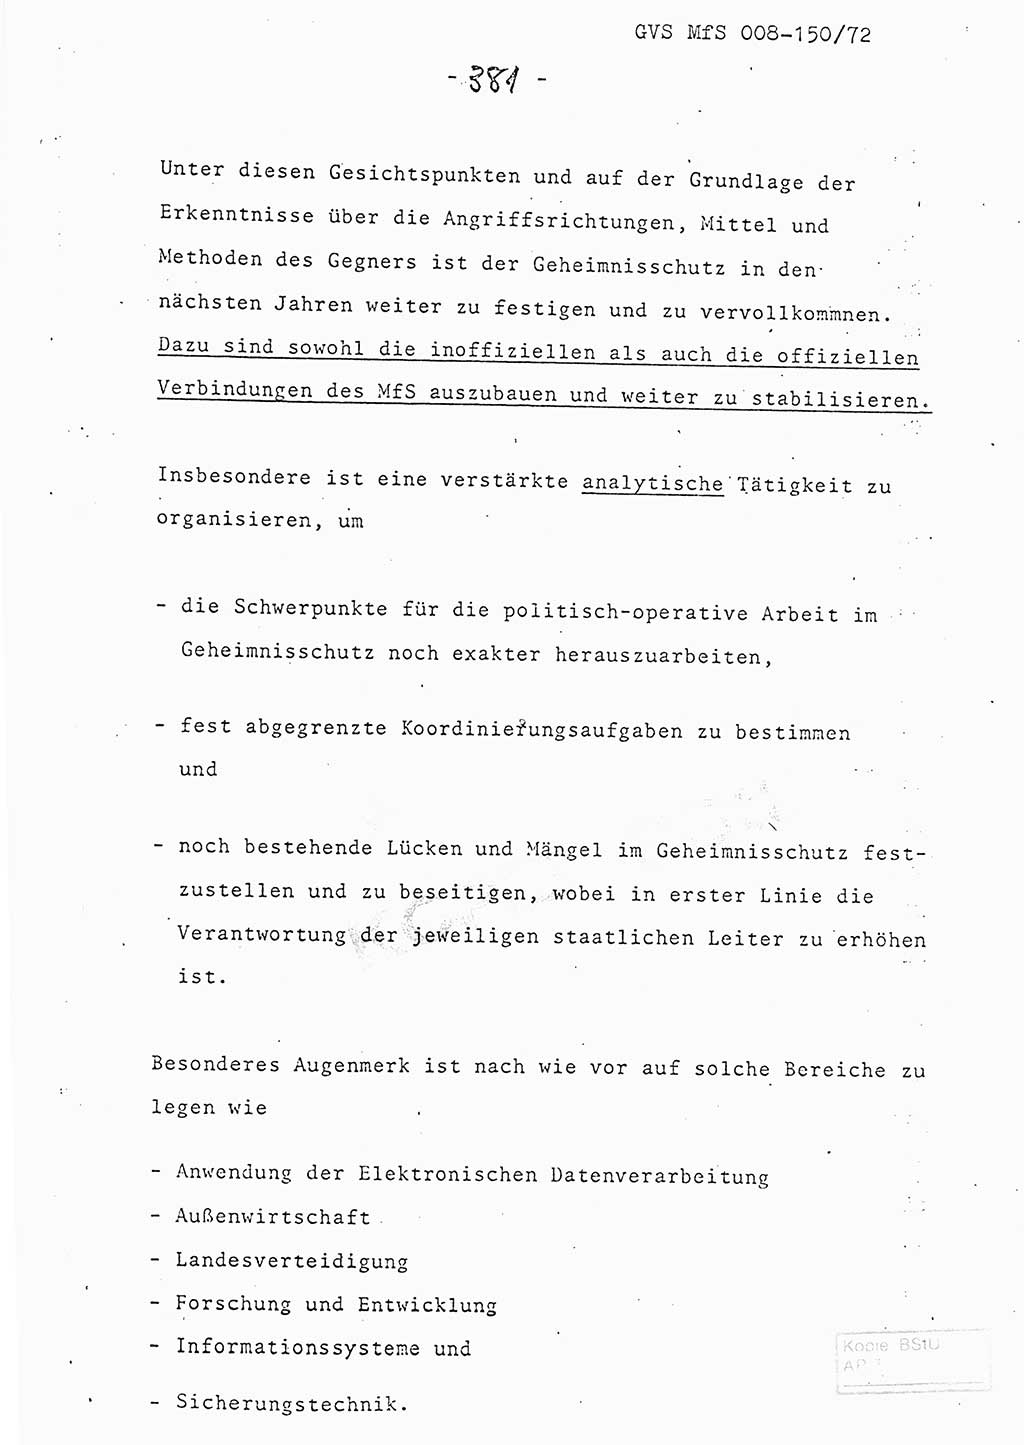 Referat (Entwurf) des Genossen Minister (Generaloberst Erich Mielke) auf der Dienstkonferenz 1972, Ministerium für Staatssicherheit (MfS) [Deutsche Demokratische Republik (DDR)], Der Minister, Geheime Verschlußsache (GVS) 008-150/72, Berlin 25.2.1972, Seite 381 (Ref. Entw. DK MfS DDR Min. GVS 008-150/72 1972, S. 381)